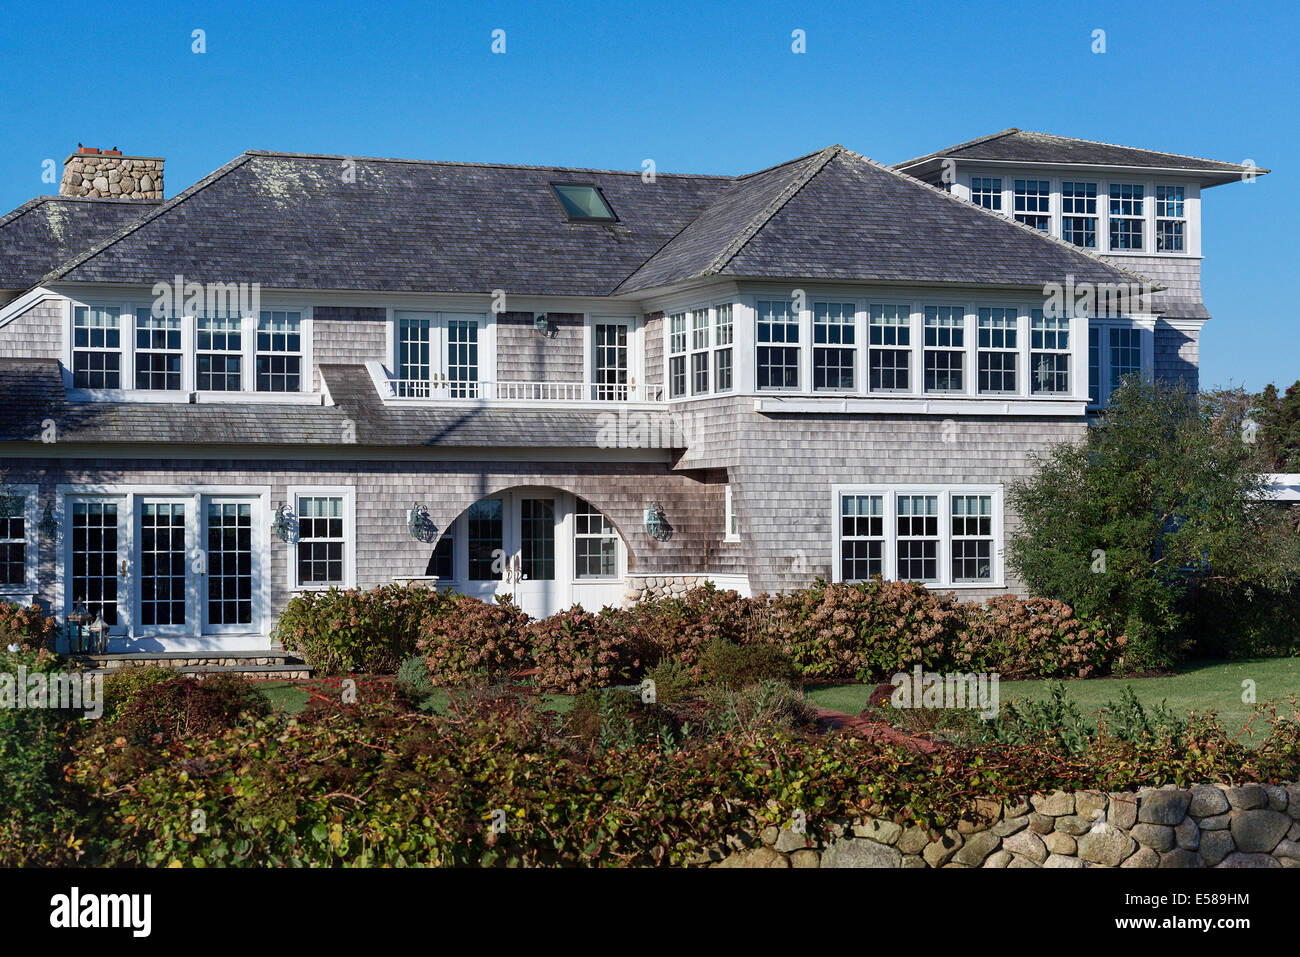 Beautiful South Beach home, Edgartown, Martha's Vineyard, Massachusetts, USA Stock Photo